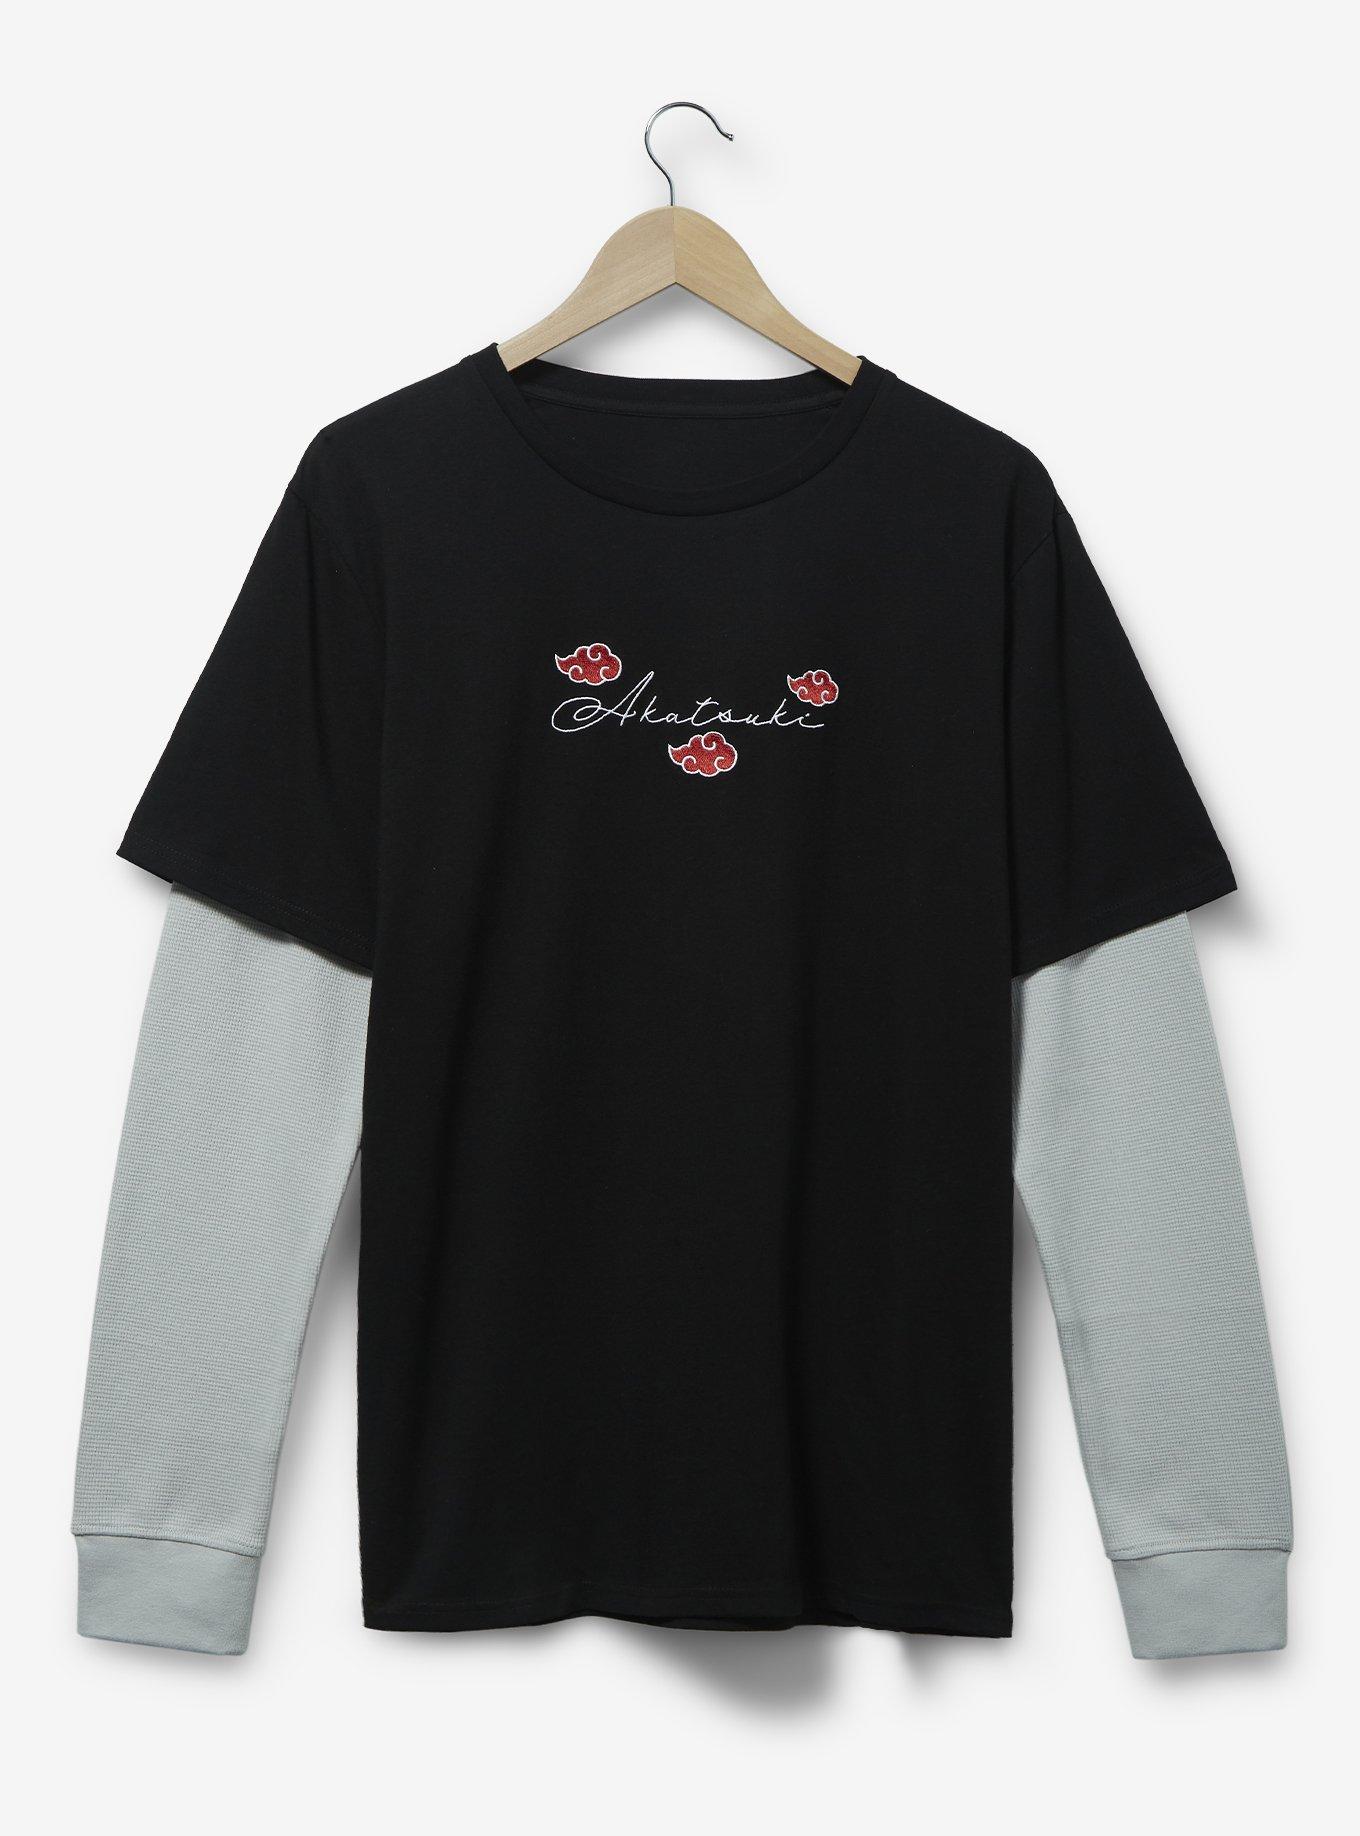 Shippuden - Itachi Clouds, Naruto T-Shirt